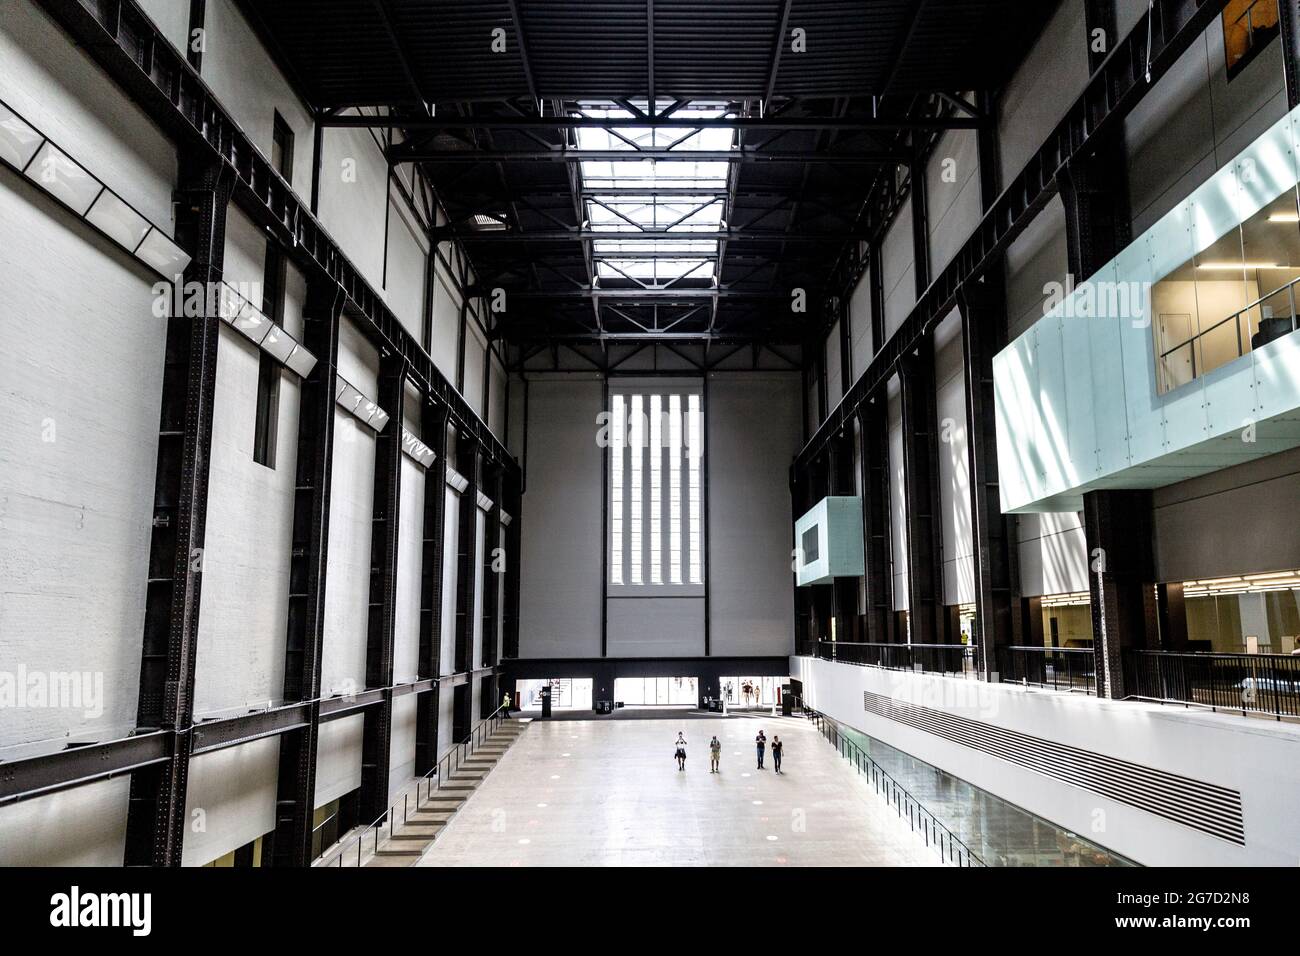 Intérieur de la turbine Hall au musée Tate Modern, Londres, Royaume-Uni Banque D'Images